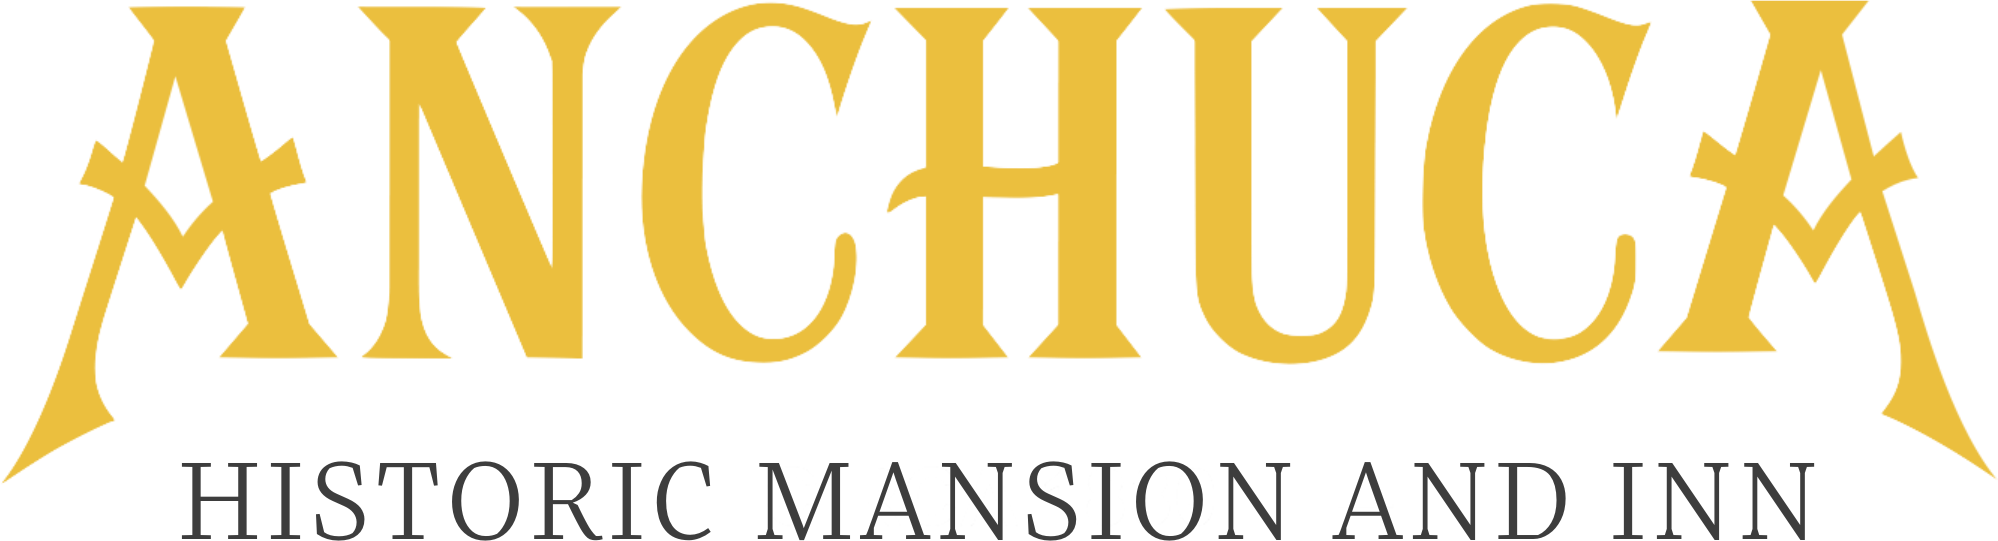 Anchuca Historic Mansion & Inn – Vicksburg, Mississippi